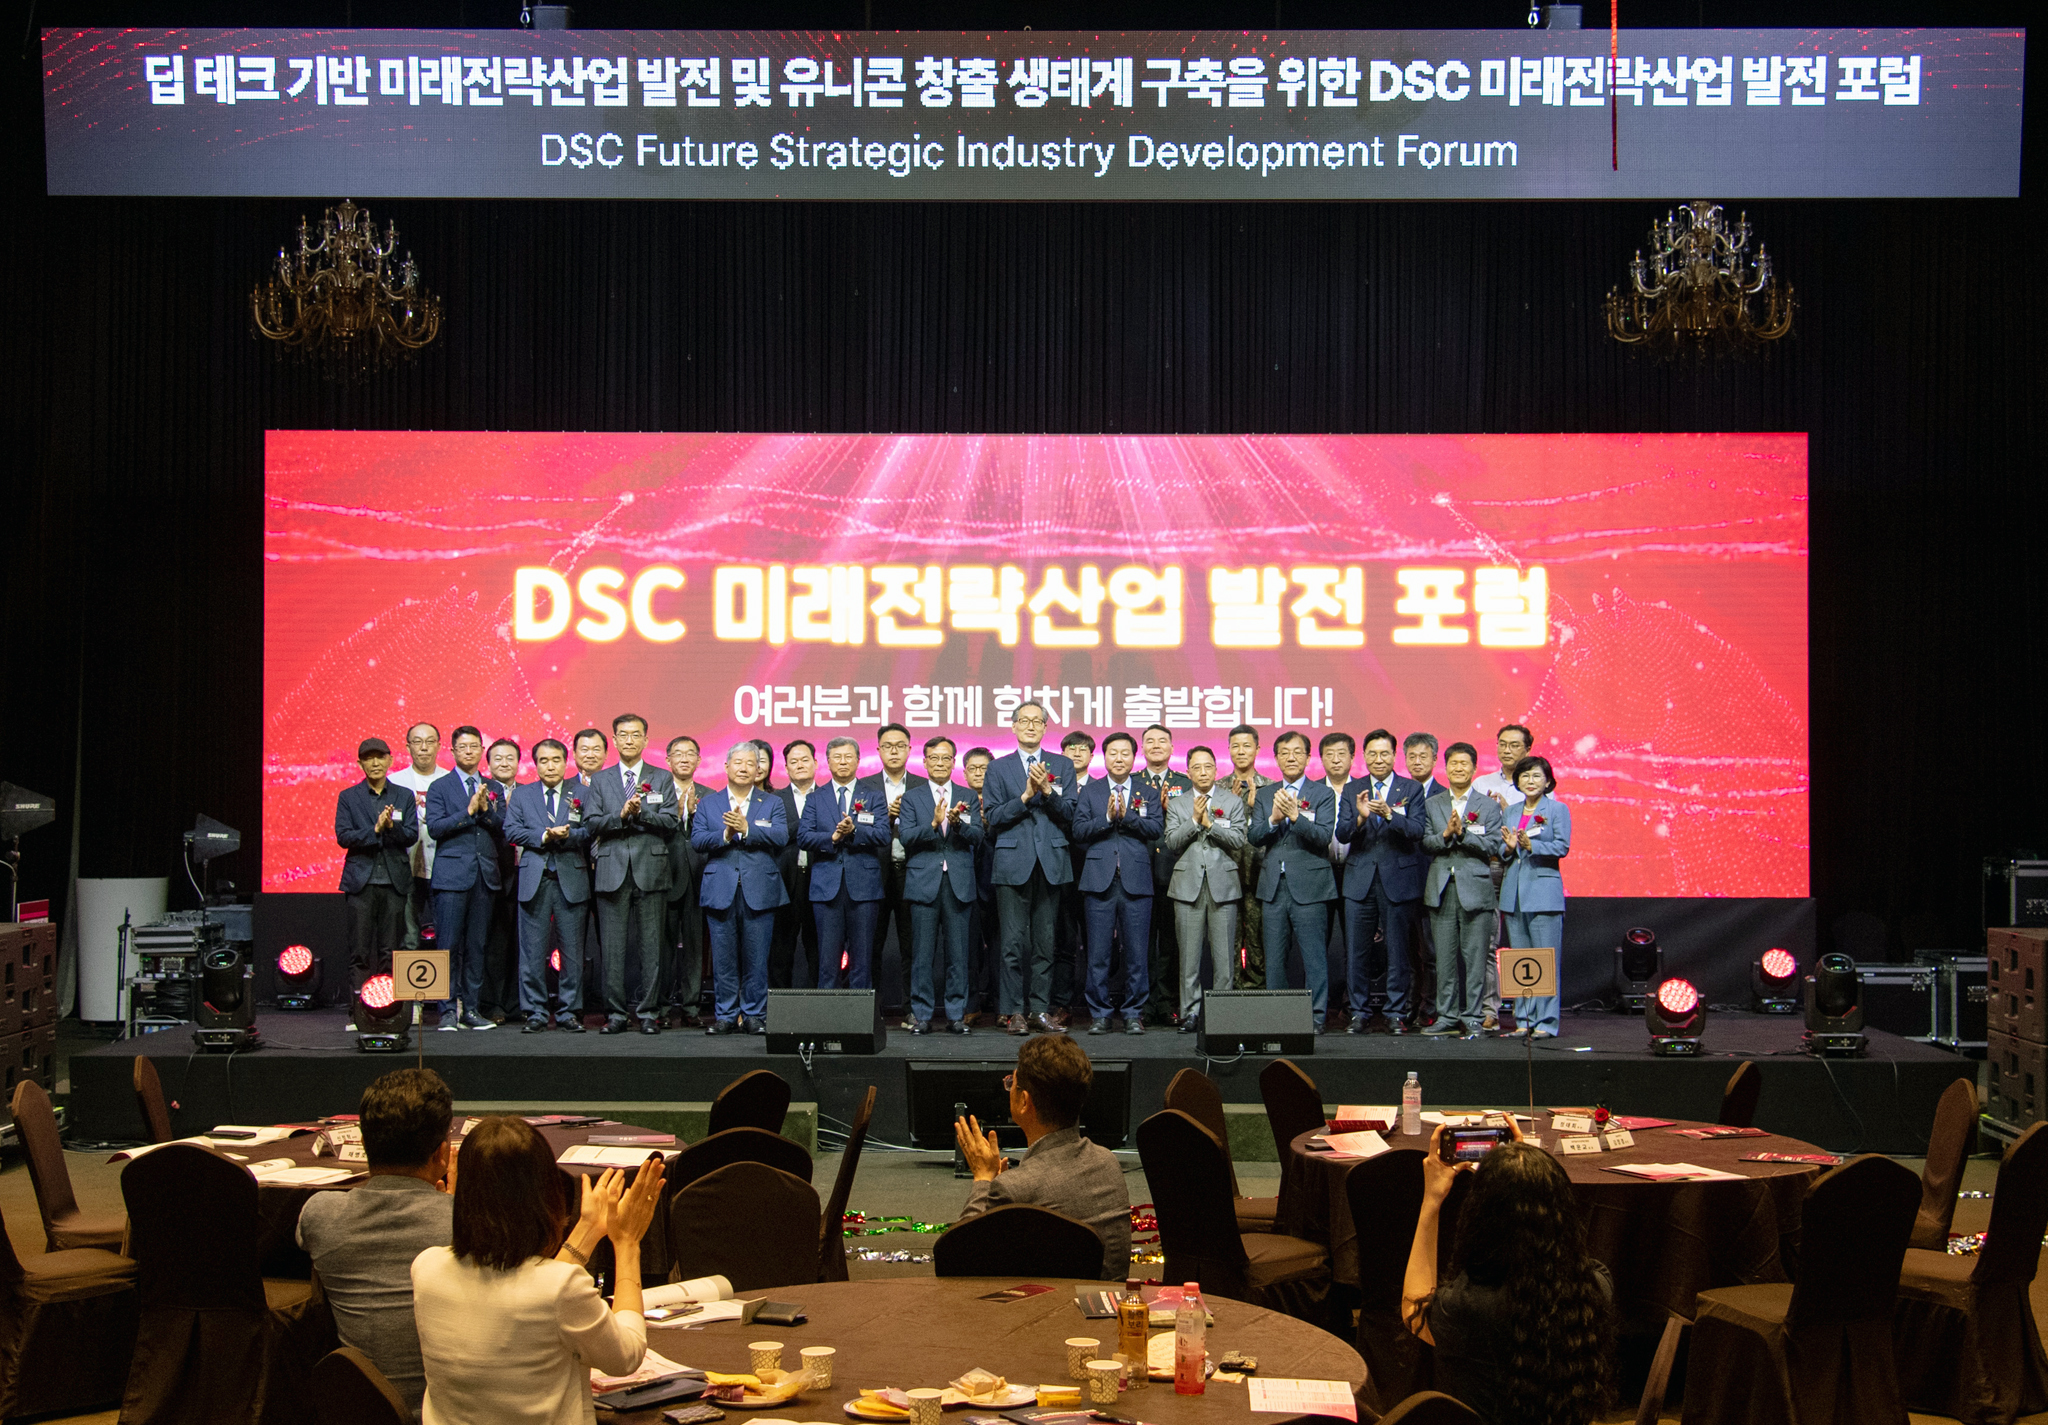 DSC 지역혁신플랫폼, 제1회 미래전략산업 발전포럼 개최 사진1